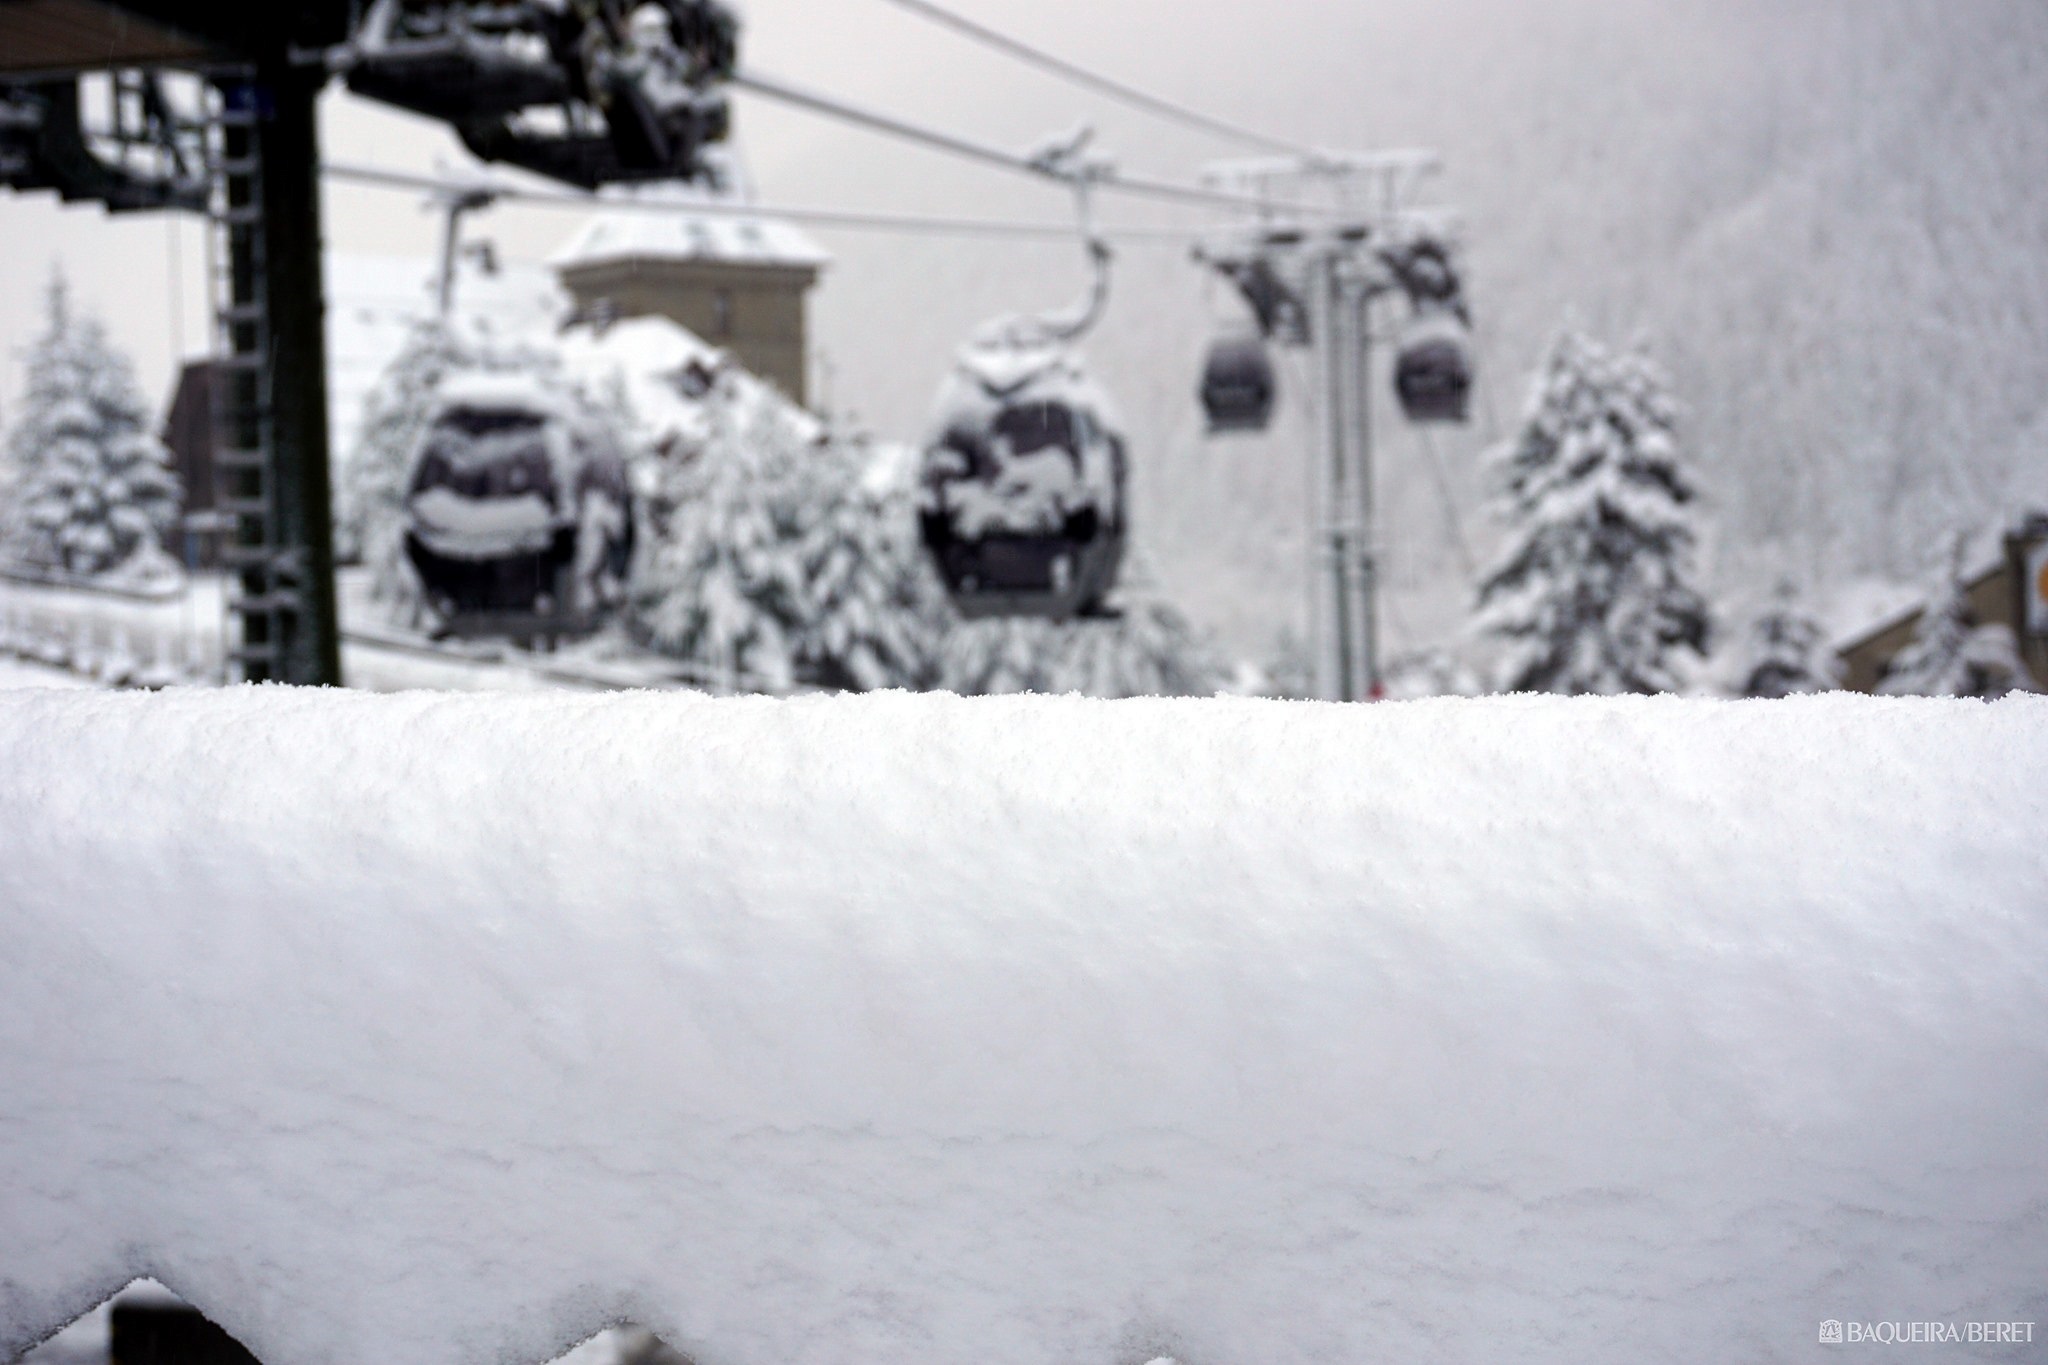 Imágenes de la nevada en el Pirineo a la espera de más nieve el fin de semana